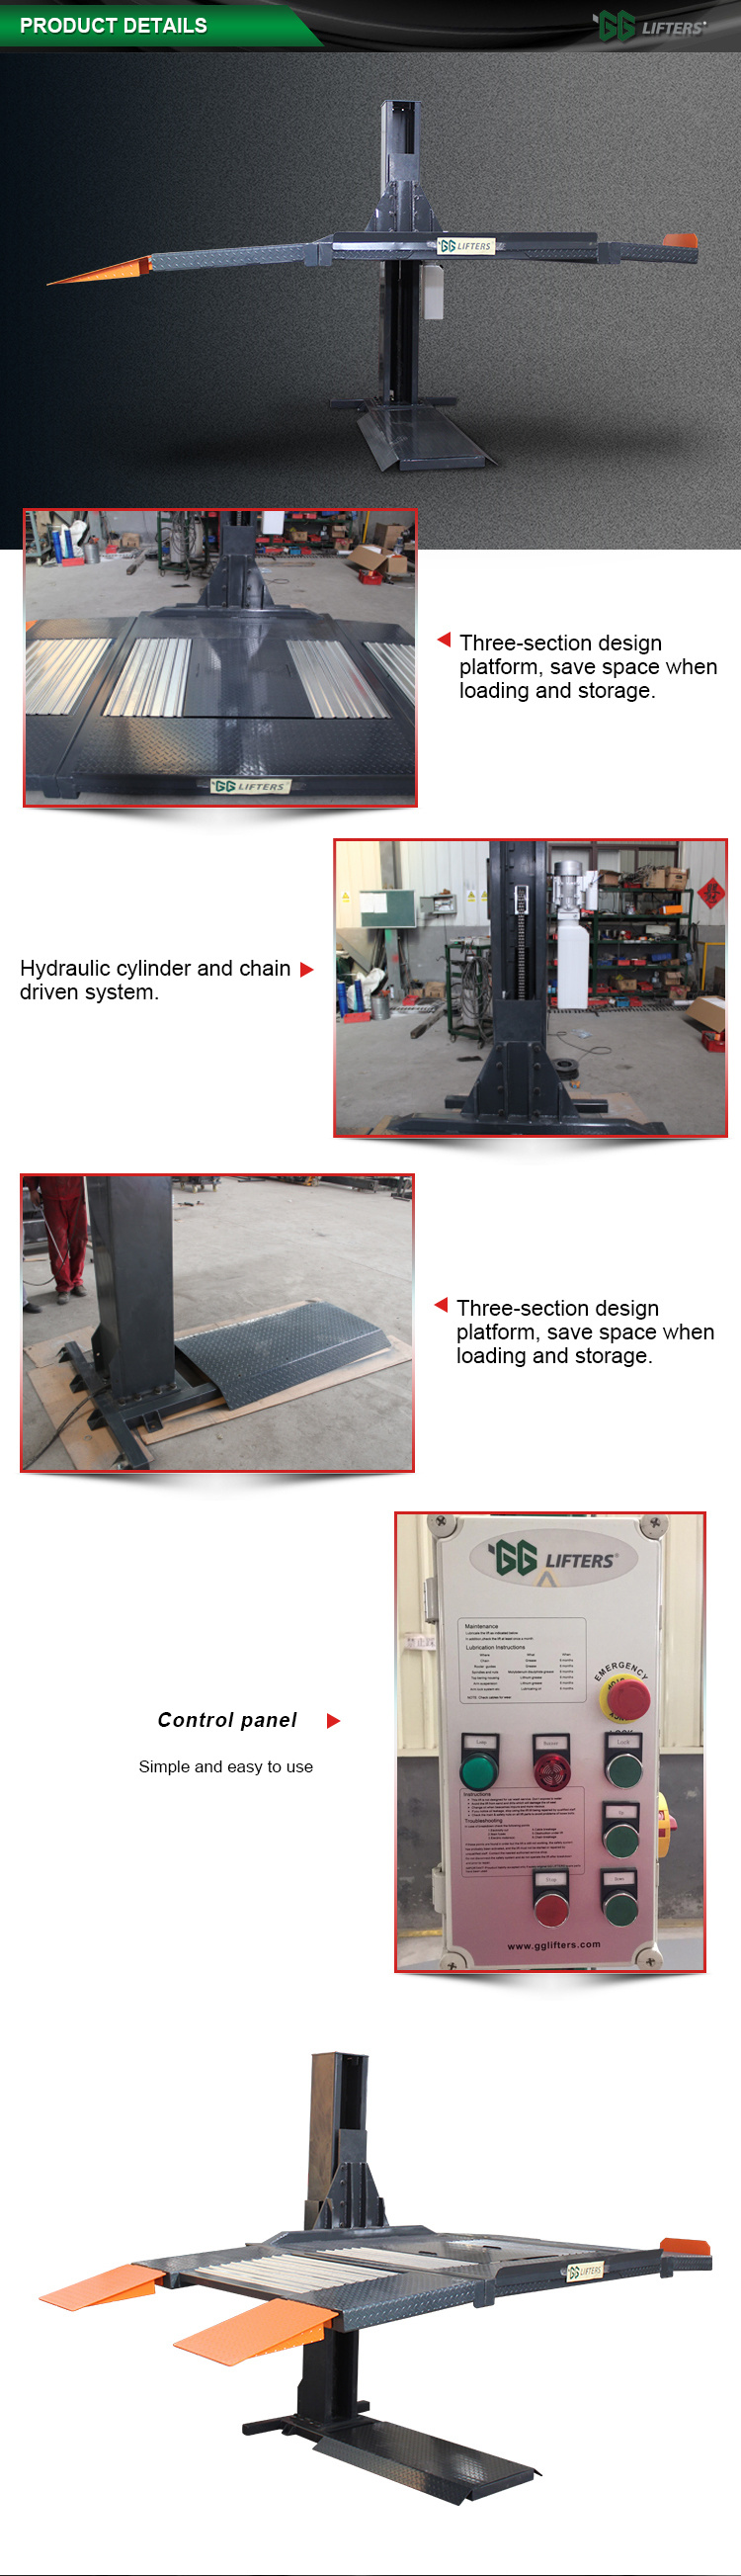 single post hydraulic garage car lift/one side car lift